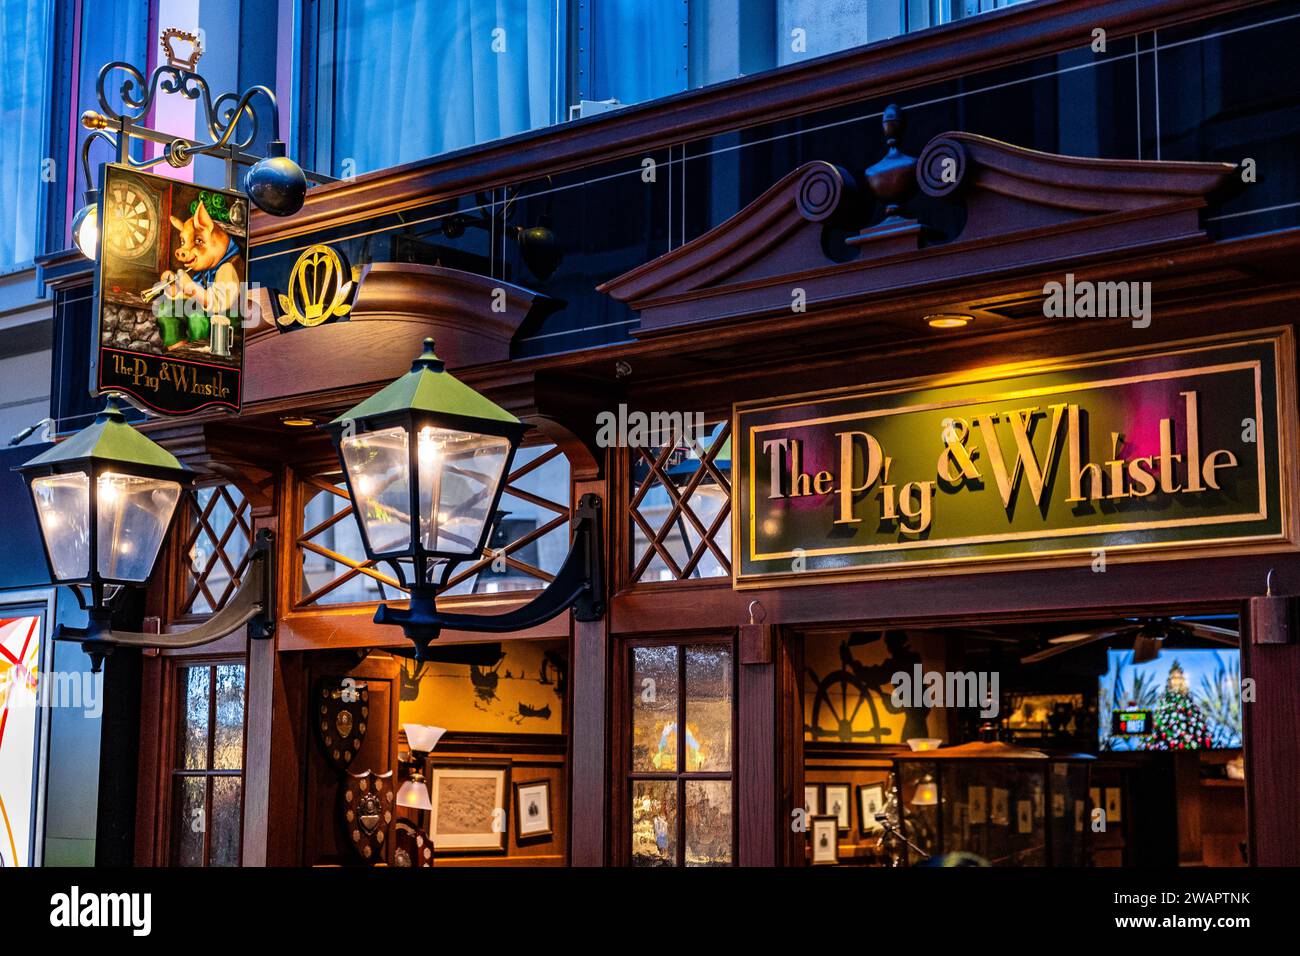 Eine lebhafte Nachtszene, die den traditionellen Pub „Pig and Whistle“ zeigt, beleuchtet von warmgelbem Licht Stockfoto